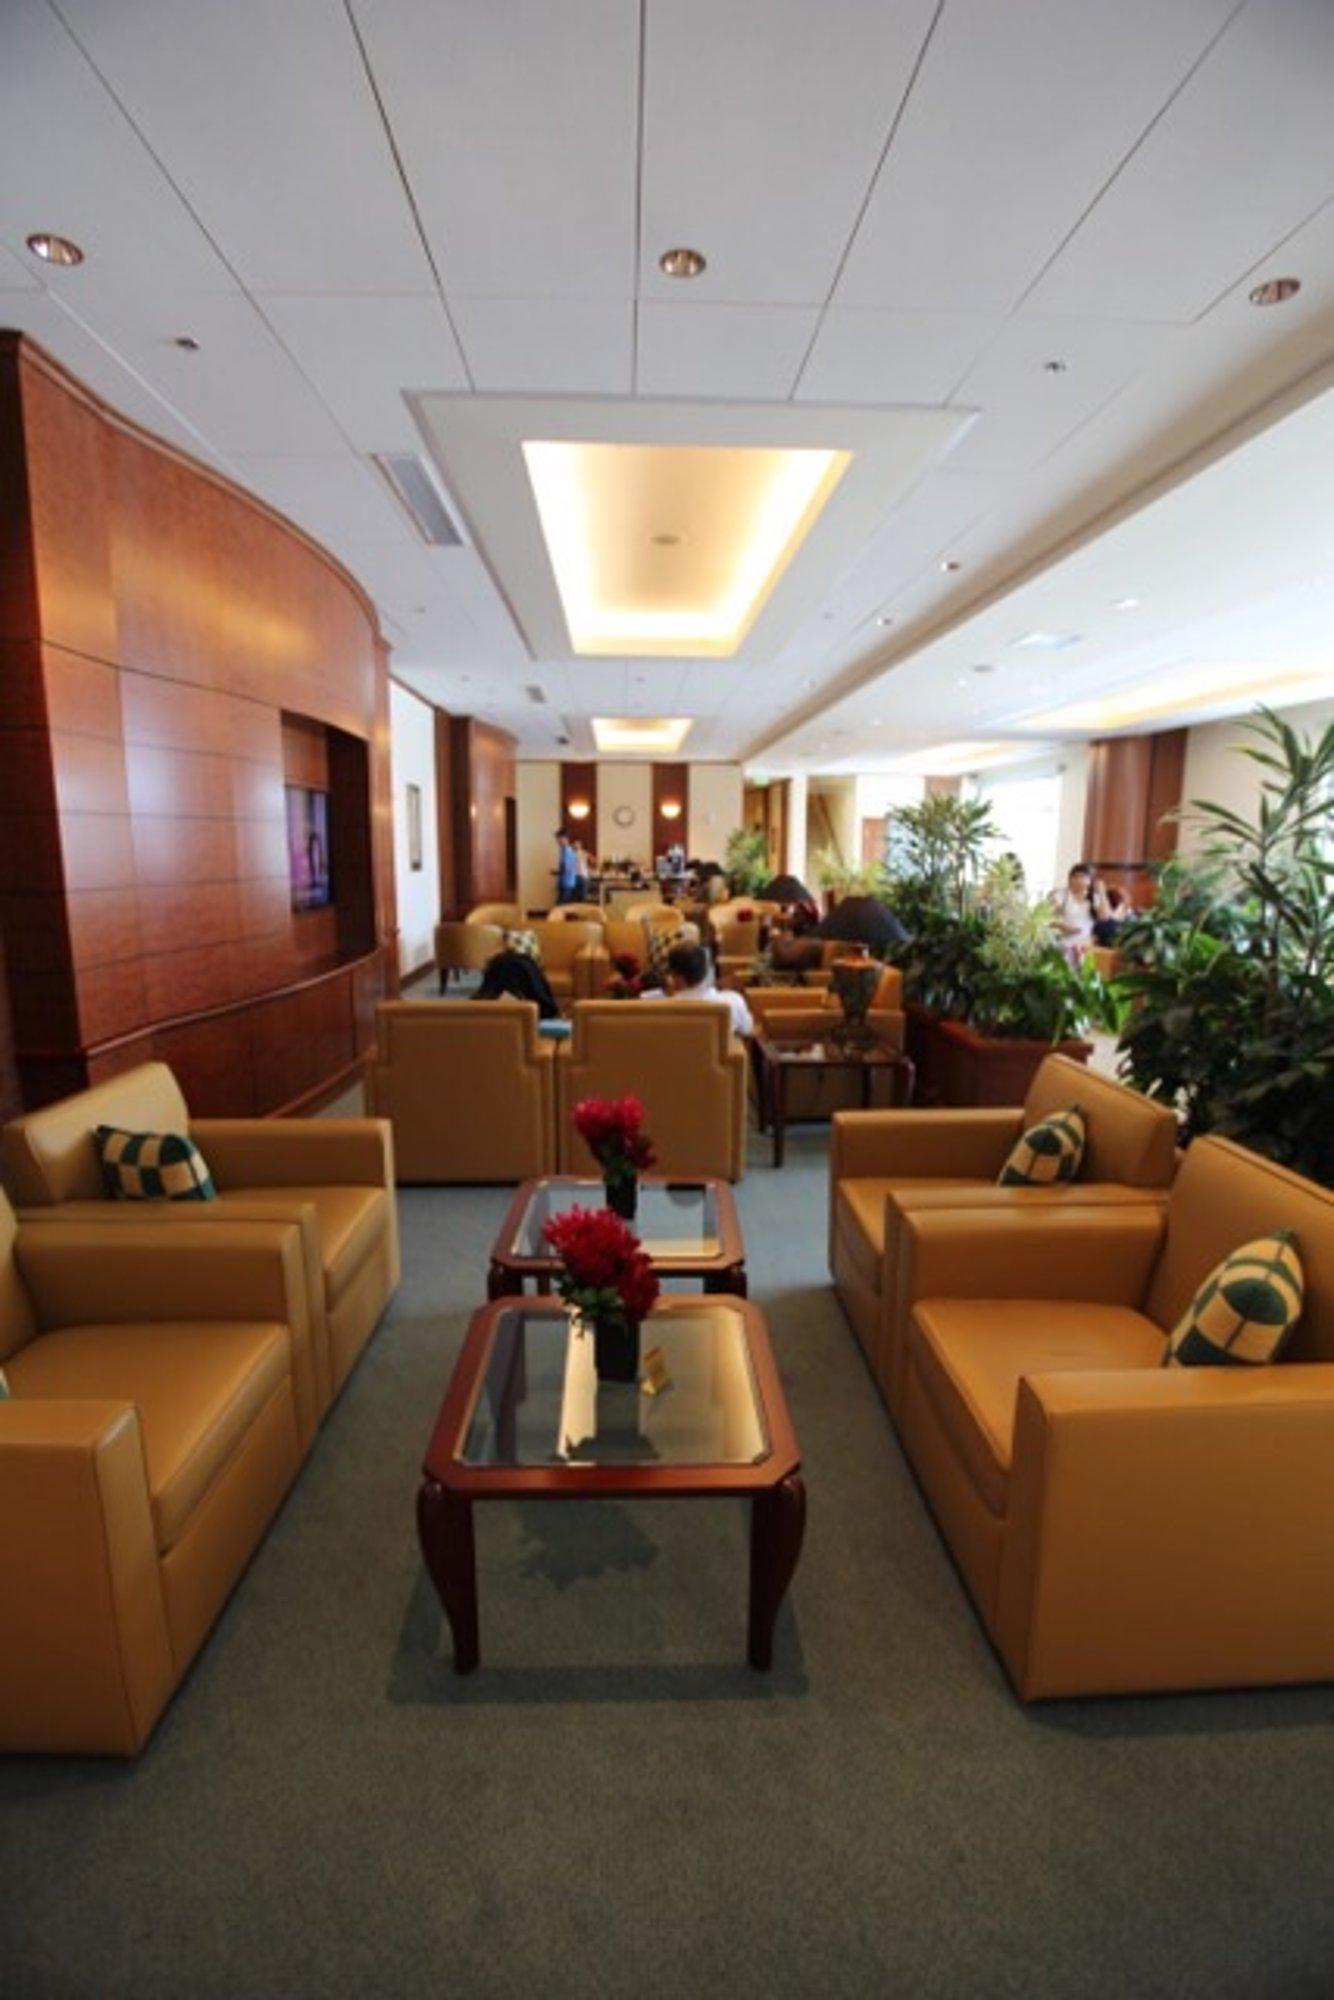 The Emirates Lounge image 2 of 28